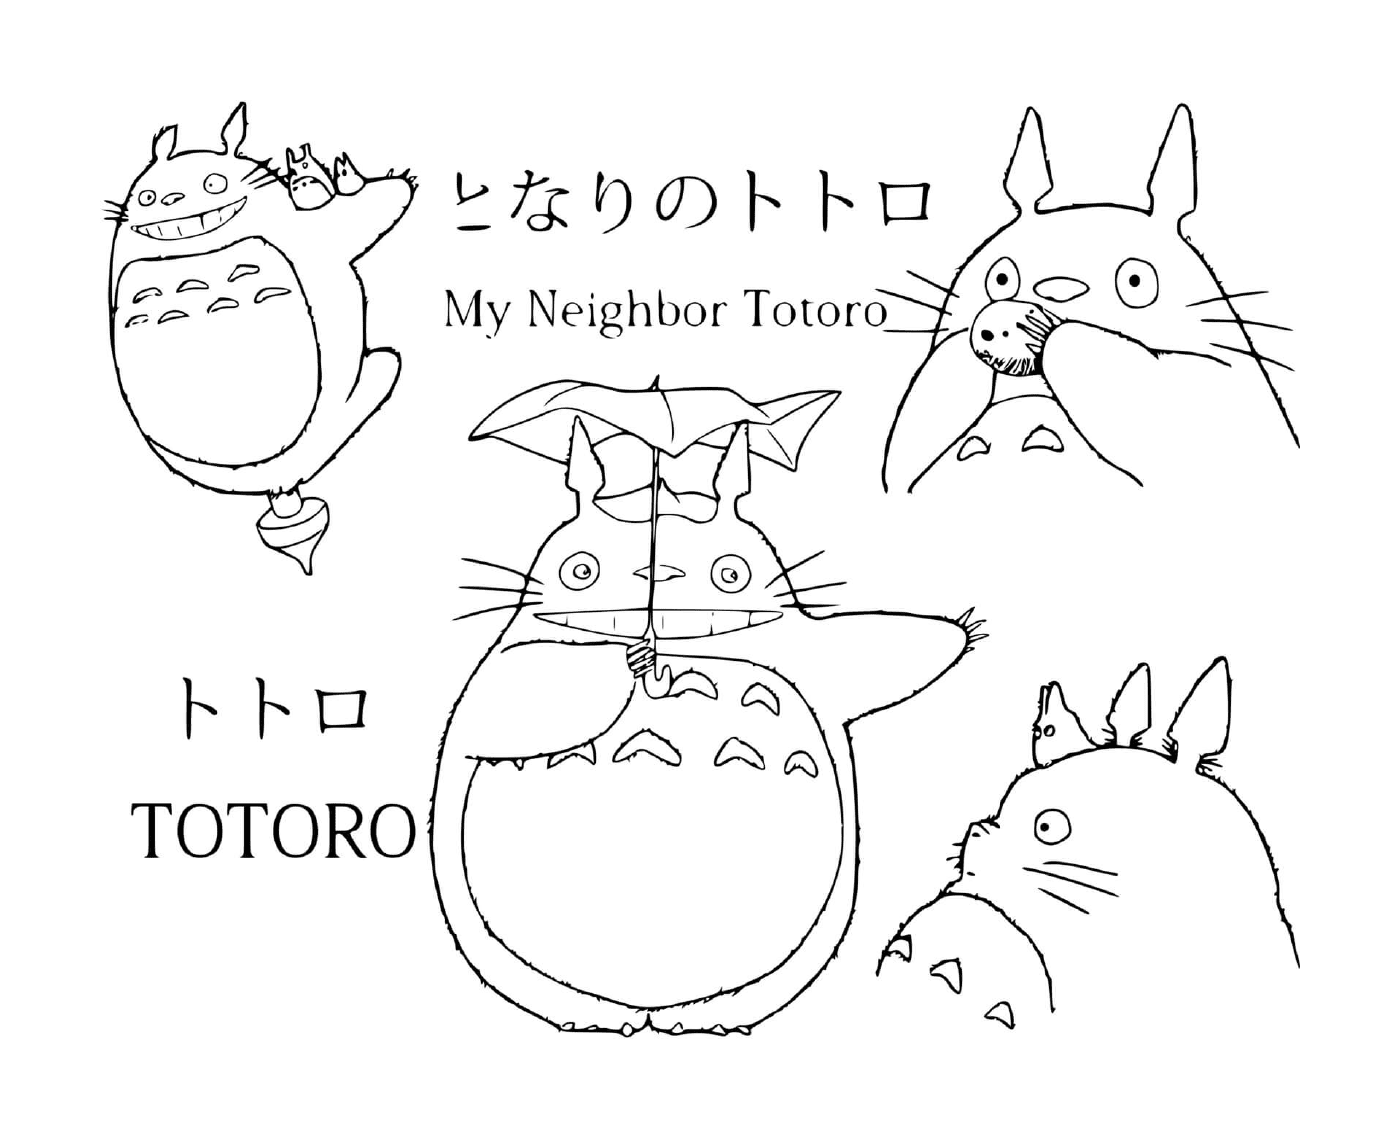   Groupe de Totoro dessinés dans différentes poses 